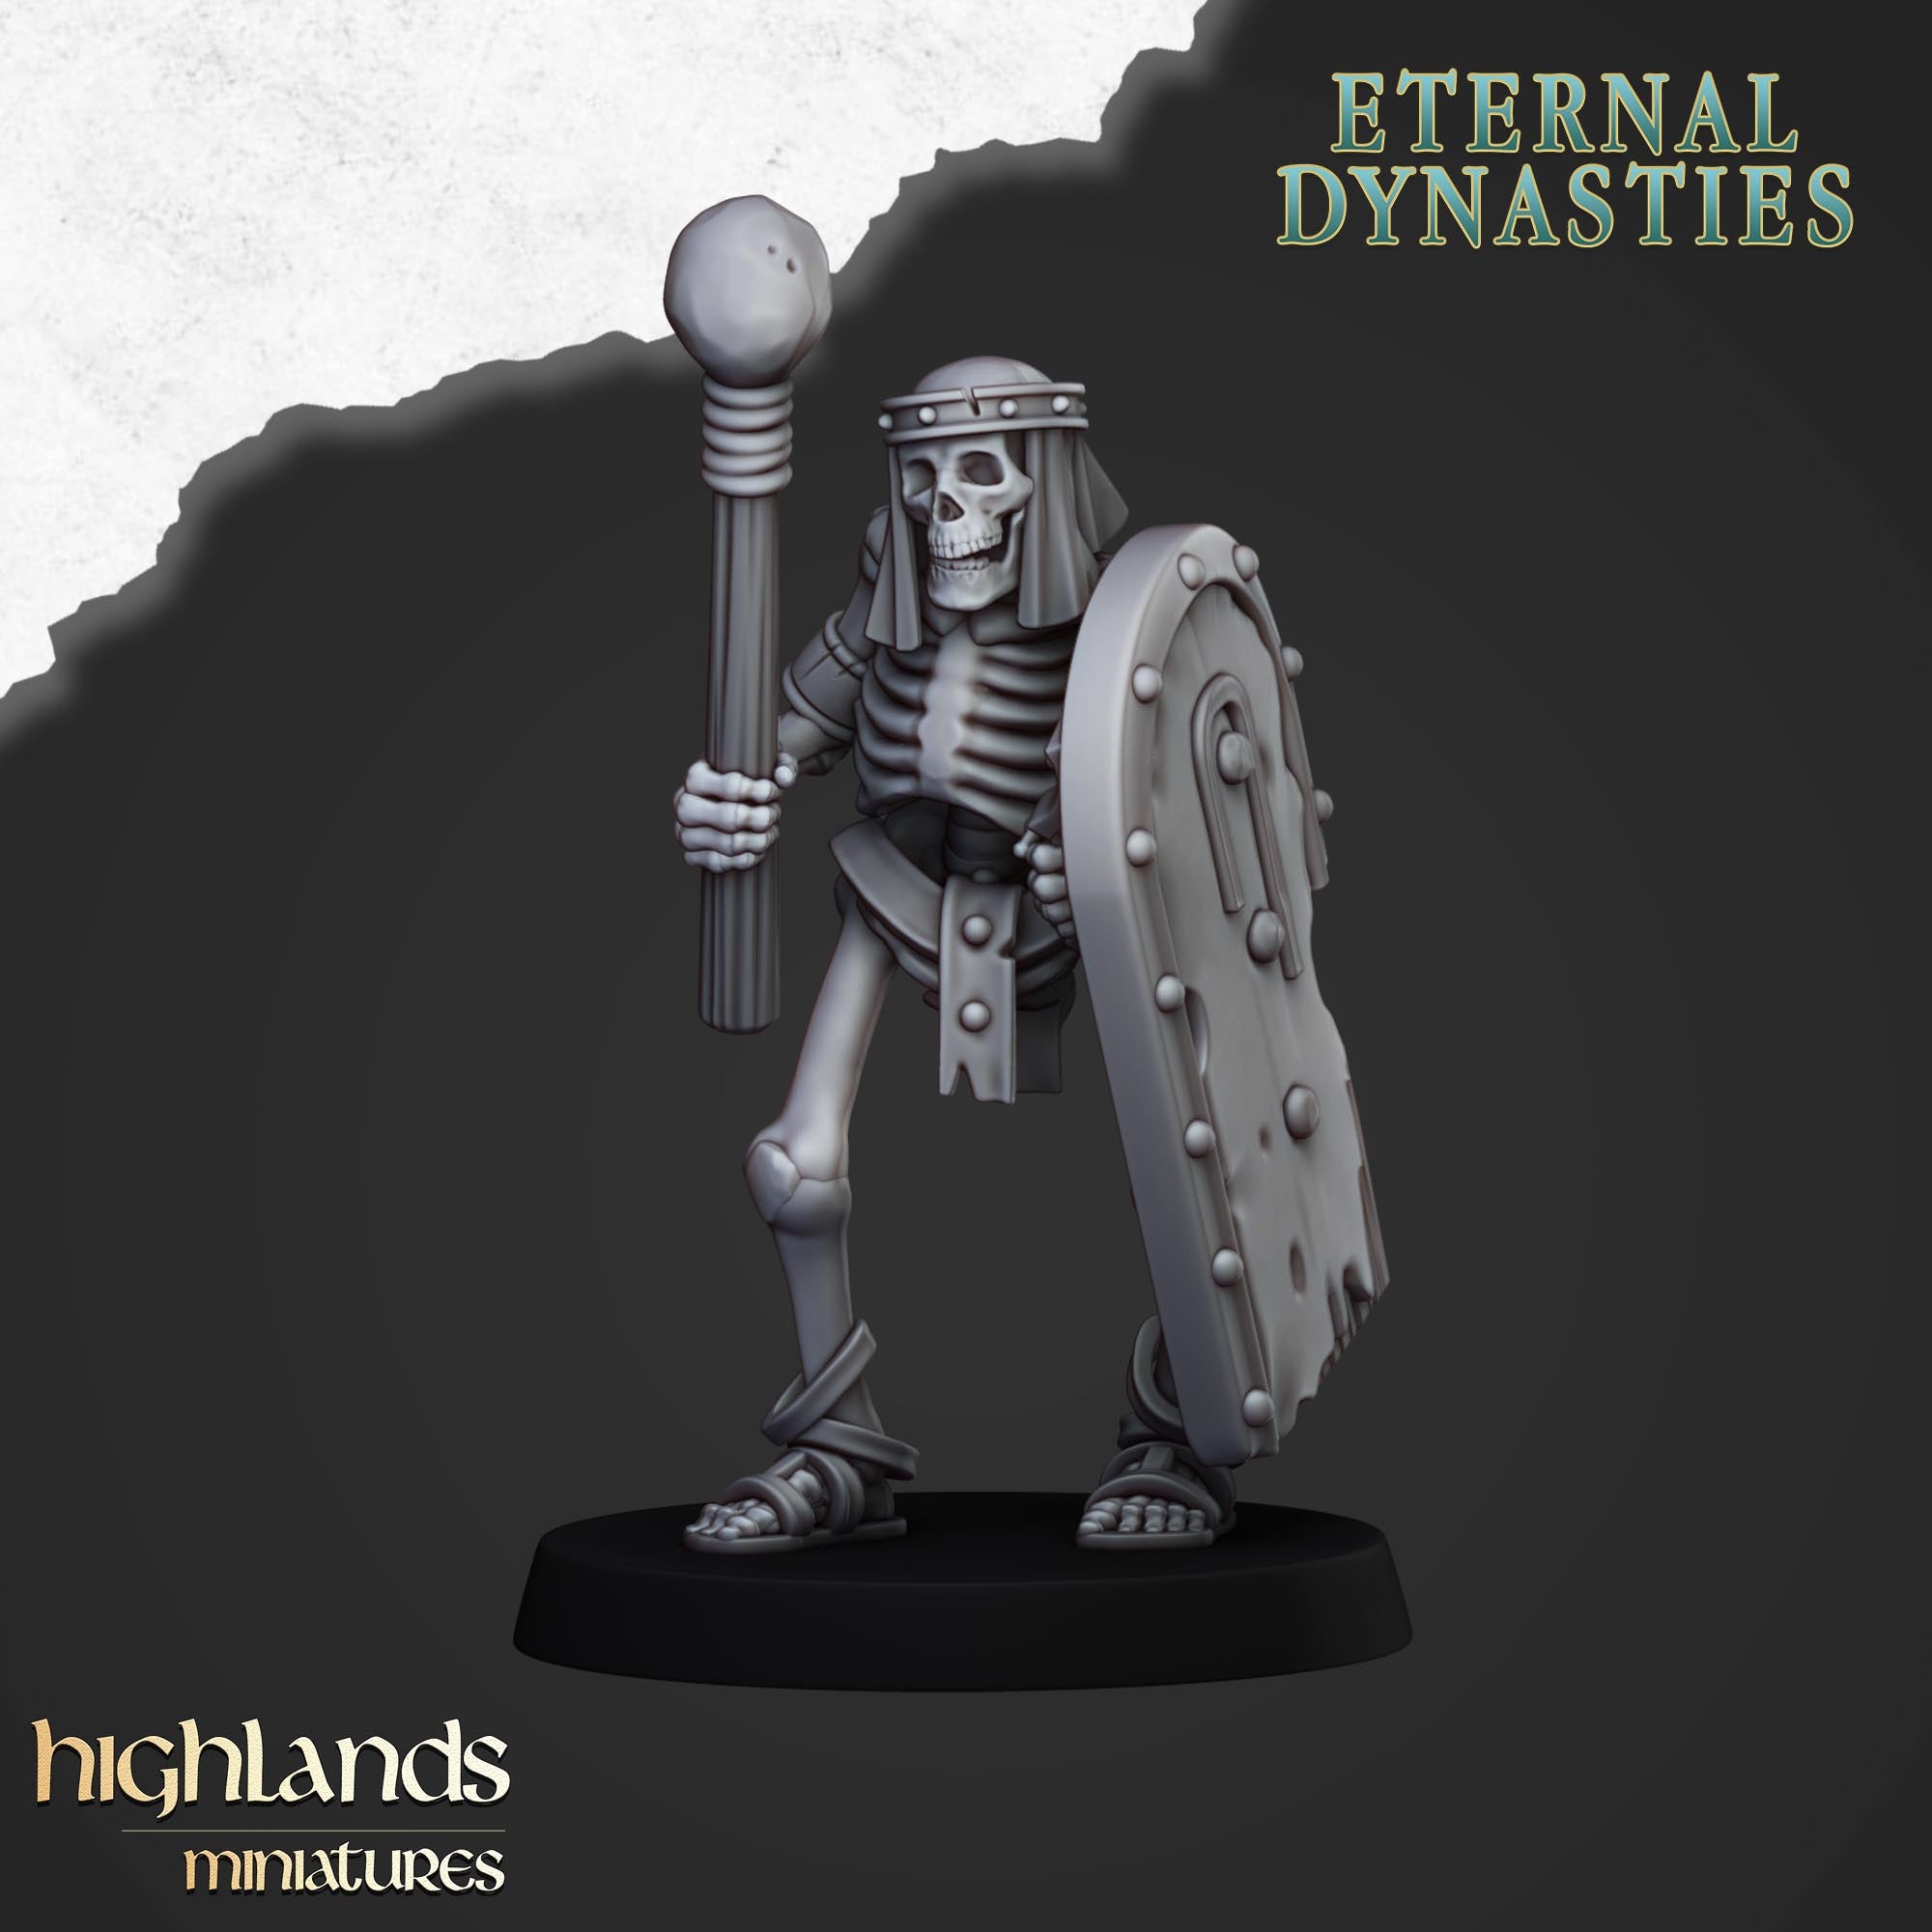 Esqueletos antiguos con armas de mano (x15) - Dinastías eternas - | Miniaturas de las Tierras Altas